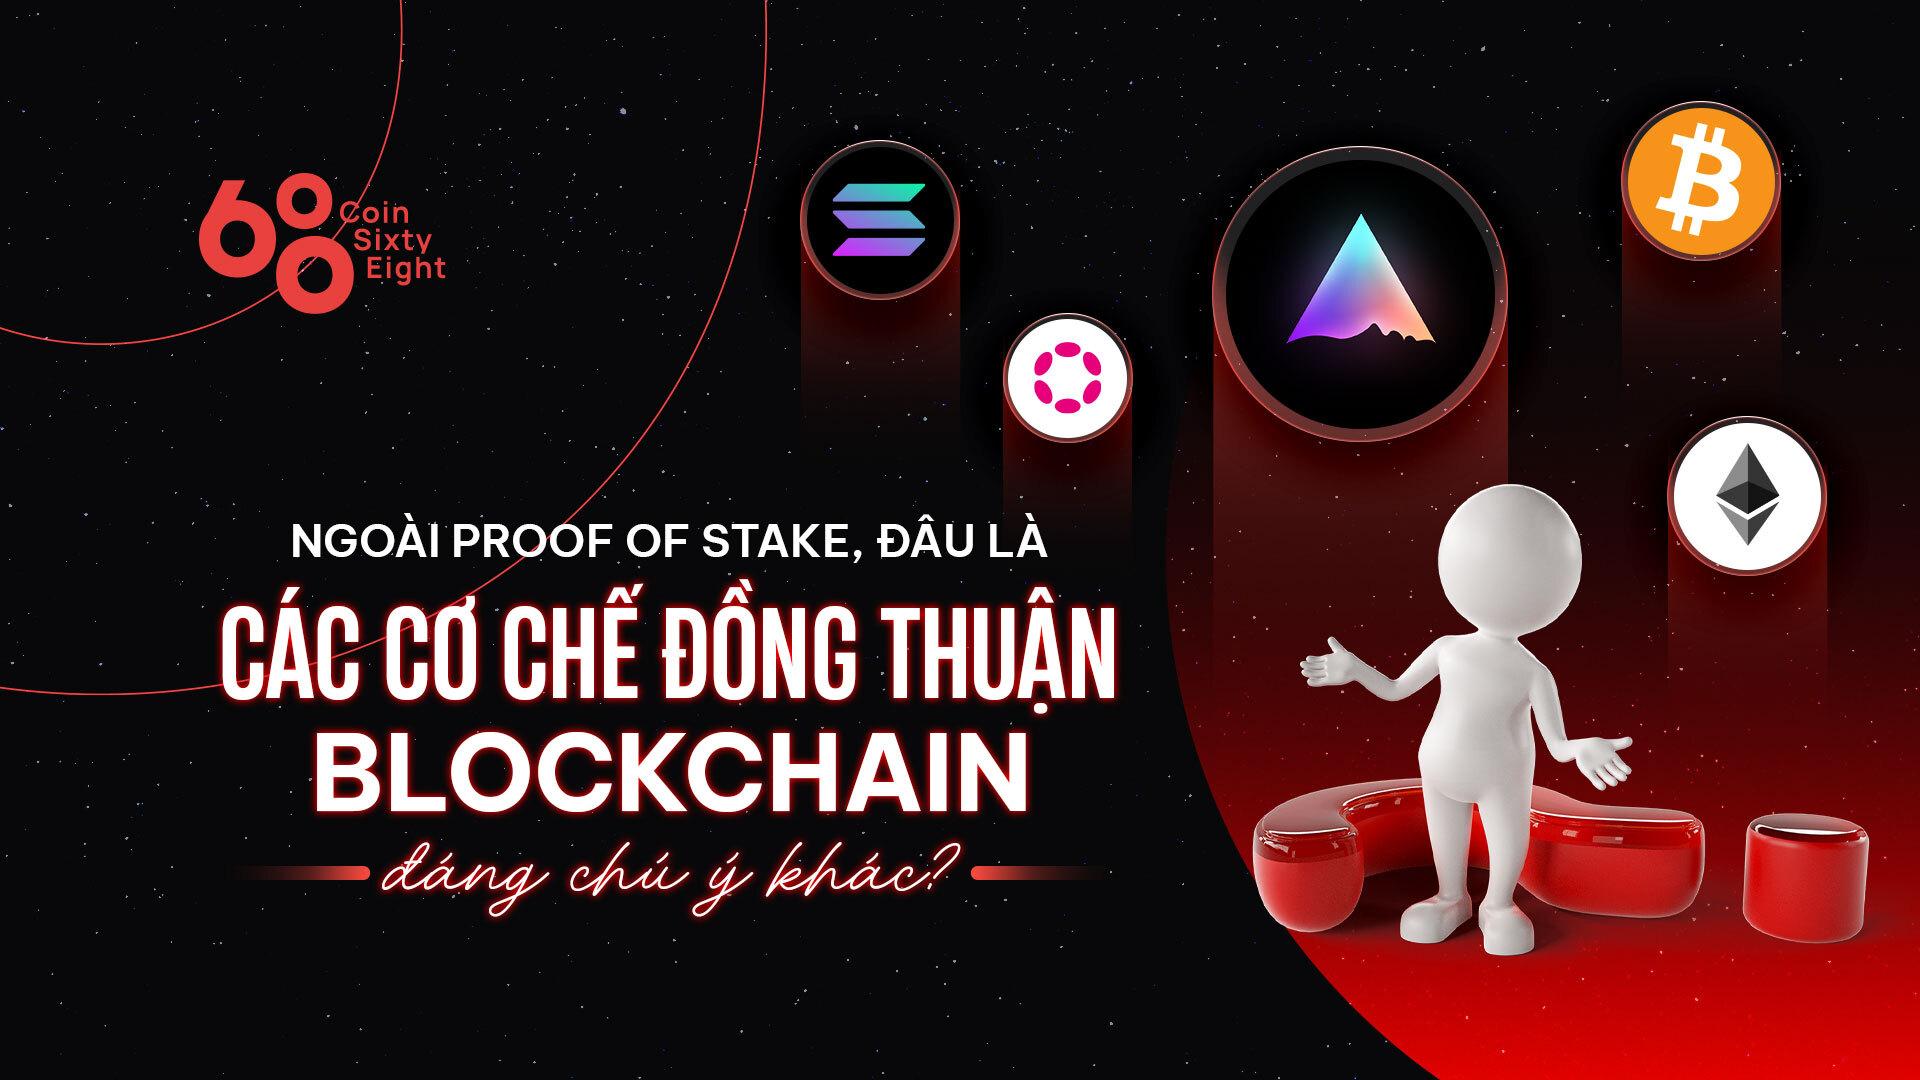 ngoai-proof-of-stake-dau-la-cac-co-che-dong-thuan-blockchain-dang-chu-y-khac